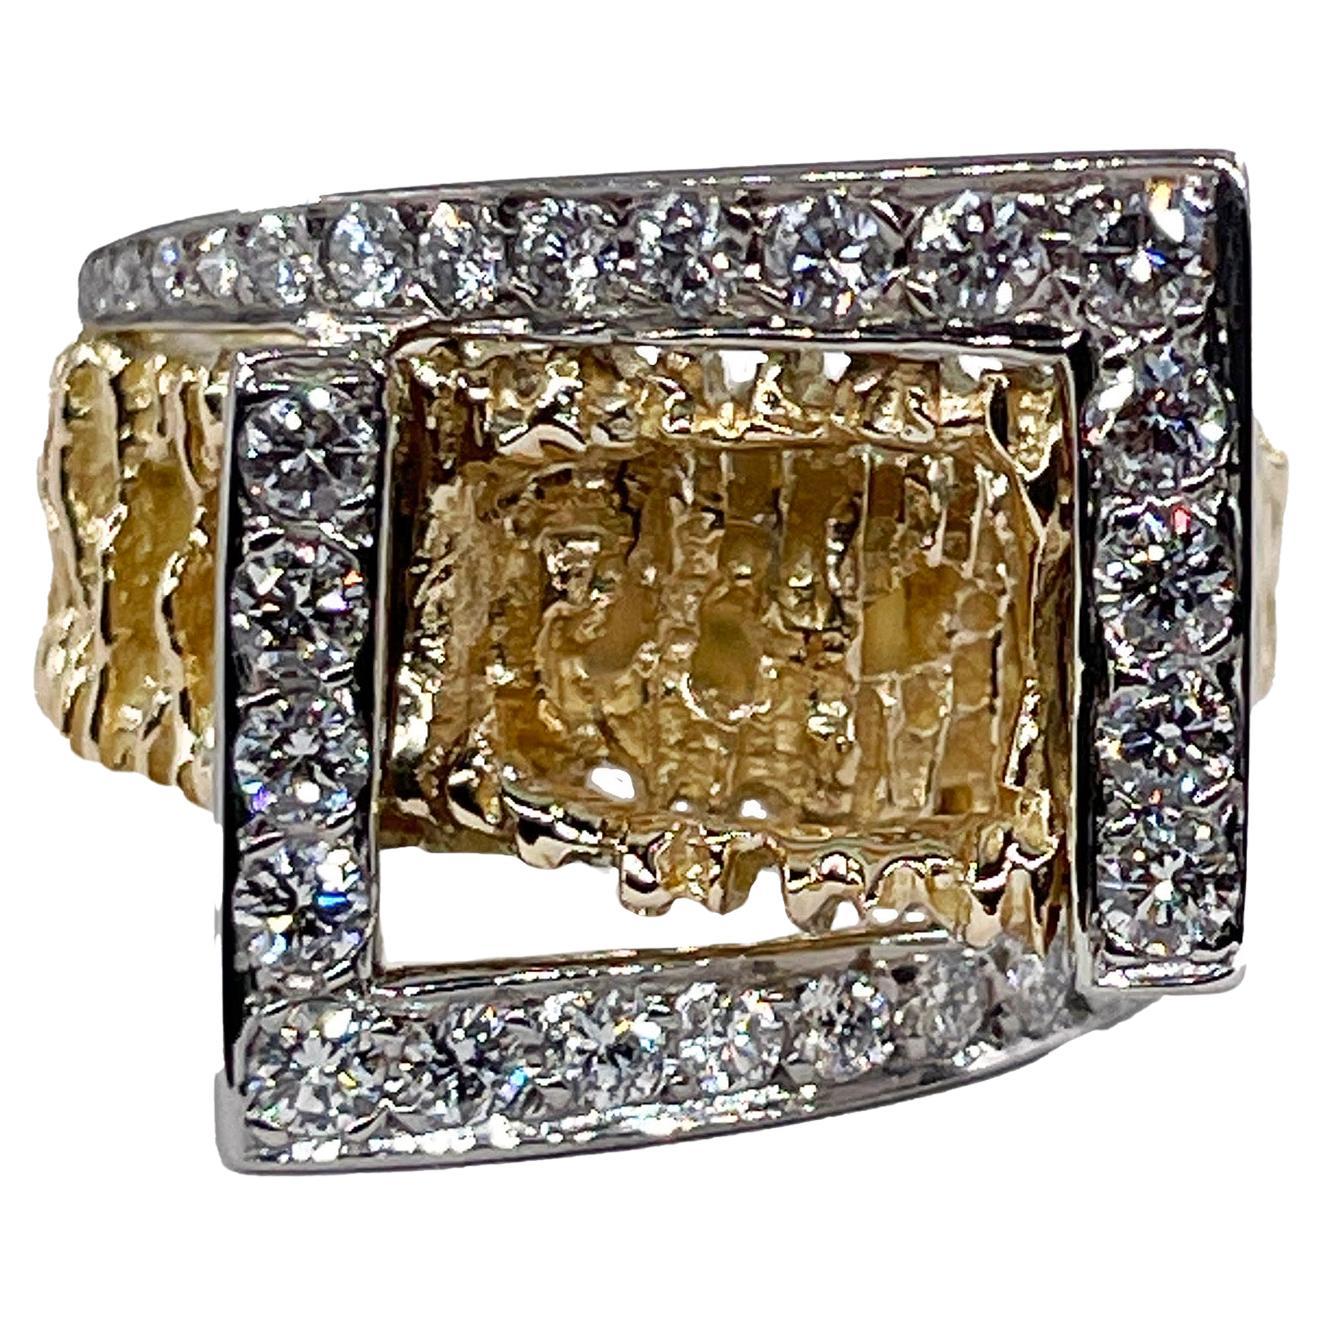 Vintage 18K Yellow Gold 0.80ct Diamond Nugget Free Form Ring ; Diamond Dinner Ring ; Diamond Sculptural Geometric Architectural Ring.
Cette splendide bague en forme de pépite de diamant, qui rappelle la ruée vers l'or de la Californie en 1849, date